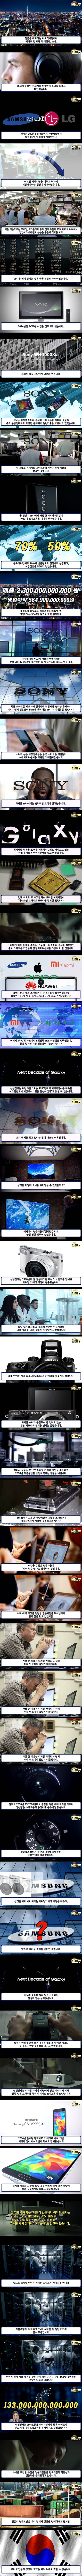 삼성의 디지털 카메라 포기는 신의 한수 | 인스티즈